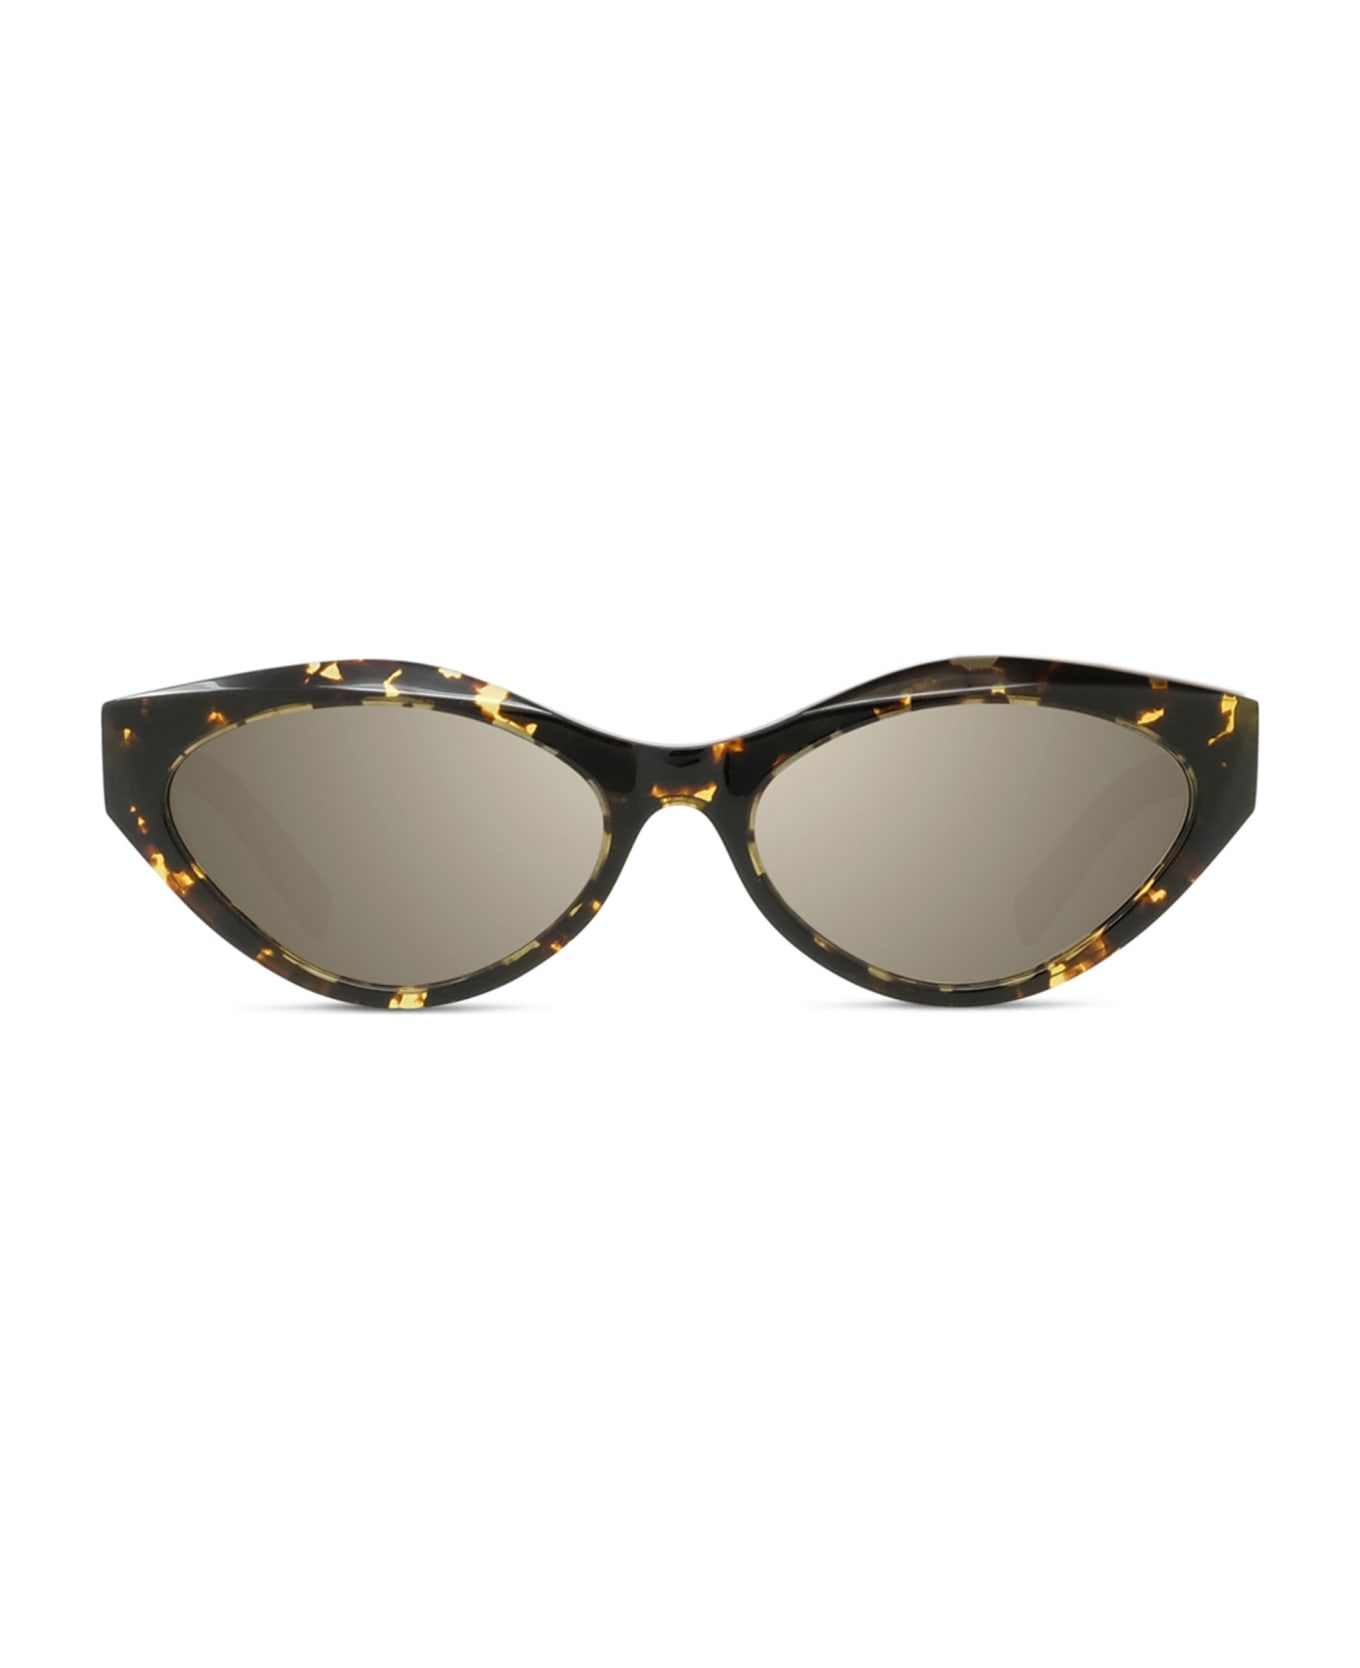 Givenchy Eyewear Gv40025u - Tortoise Sunglasses - tortoise/gold